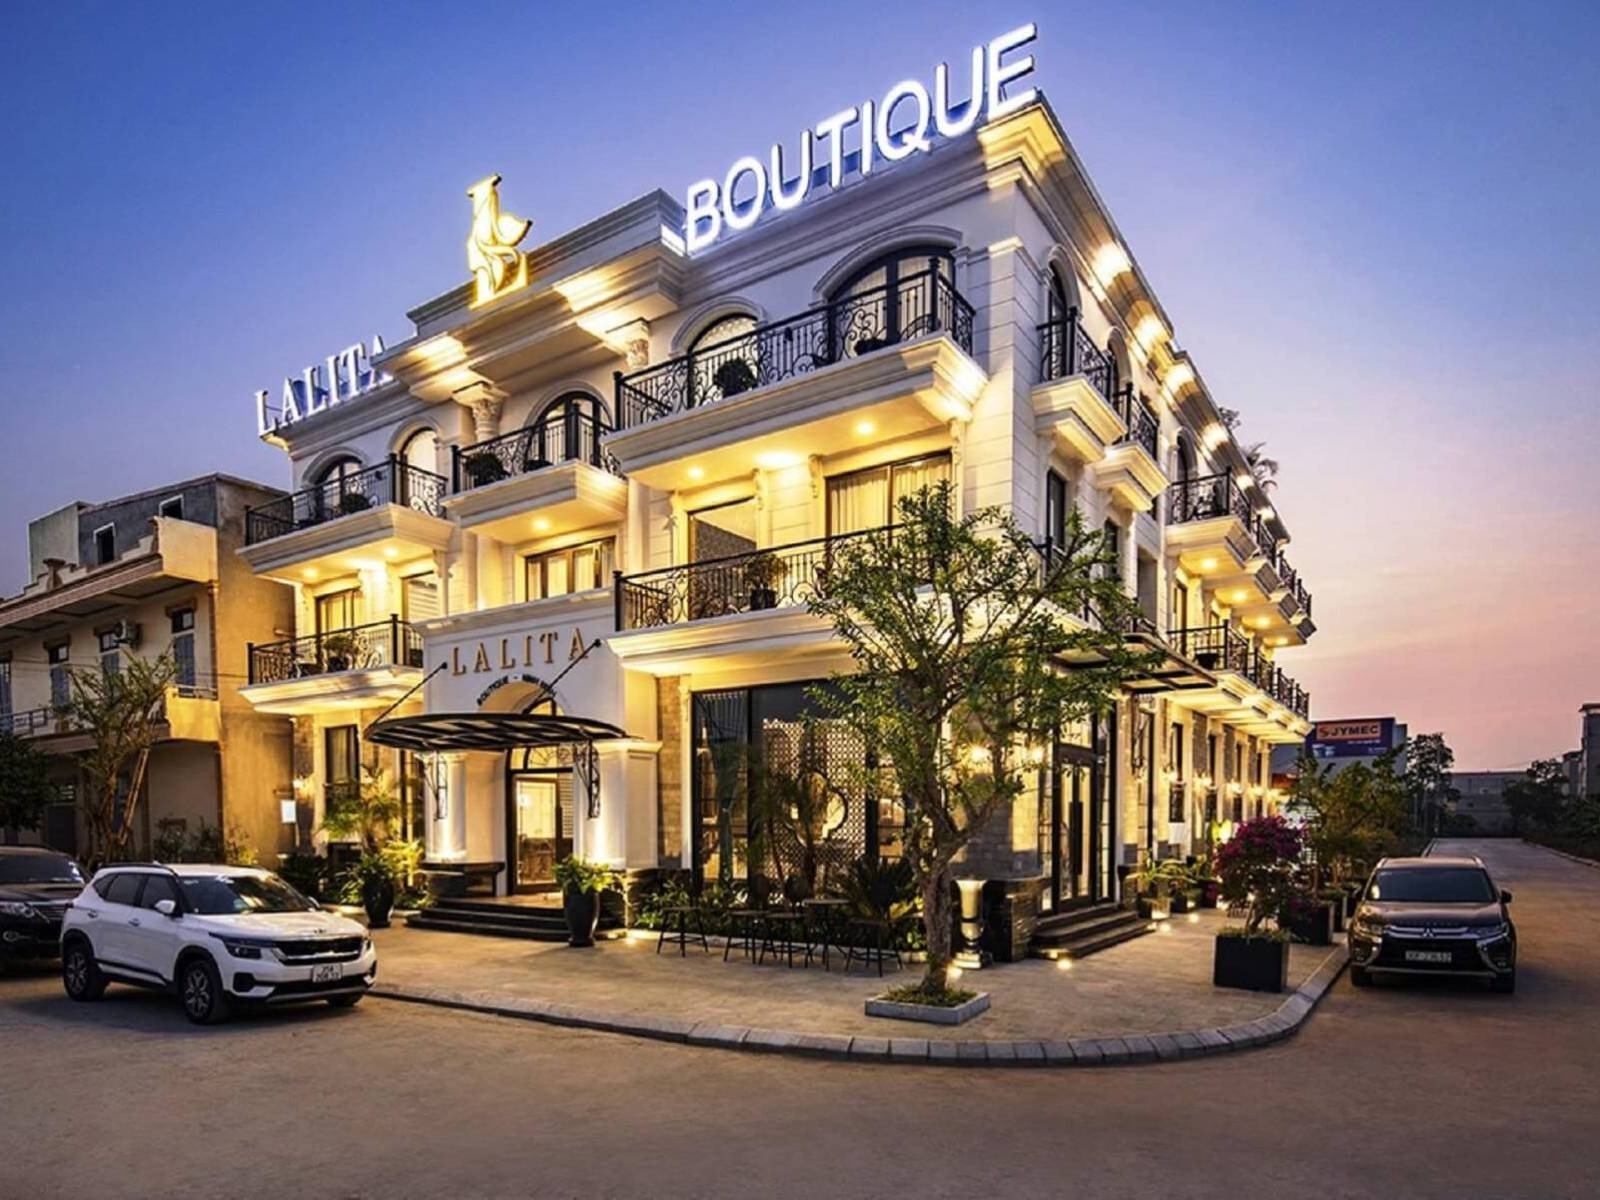 Lalita Boutique Hotel _ Spa Ninh Binh